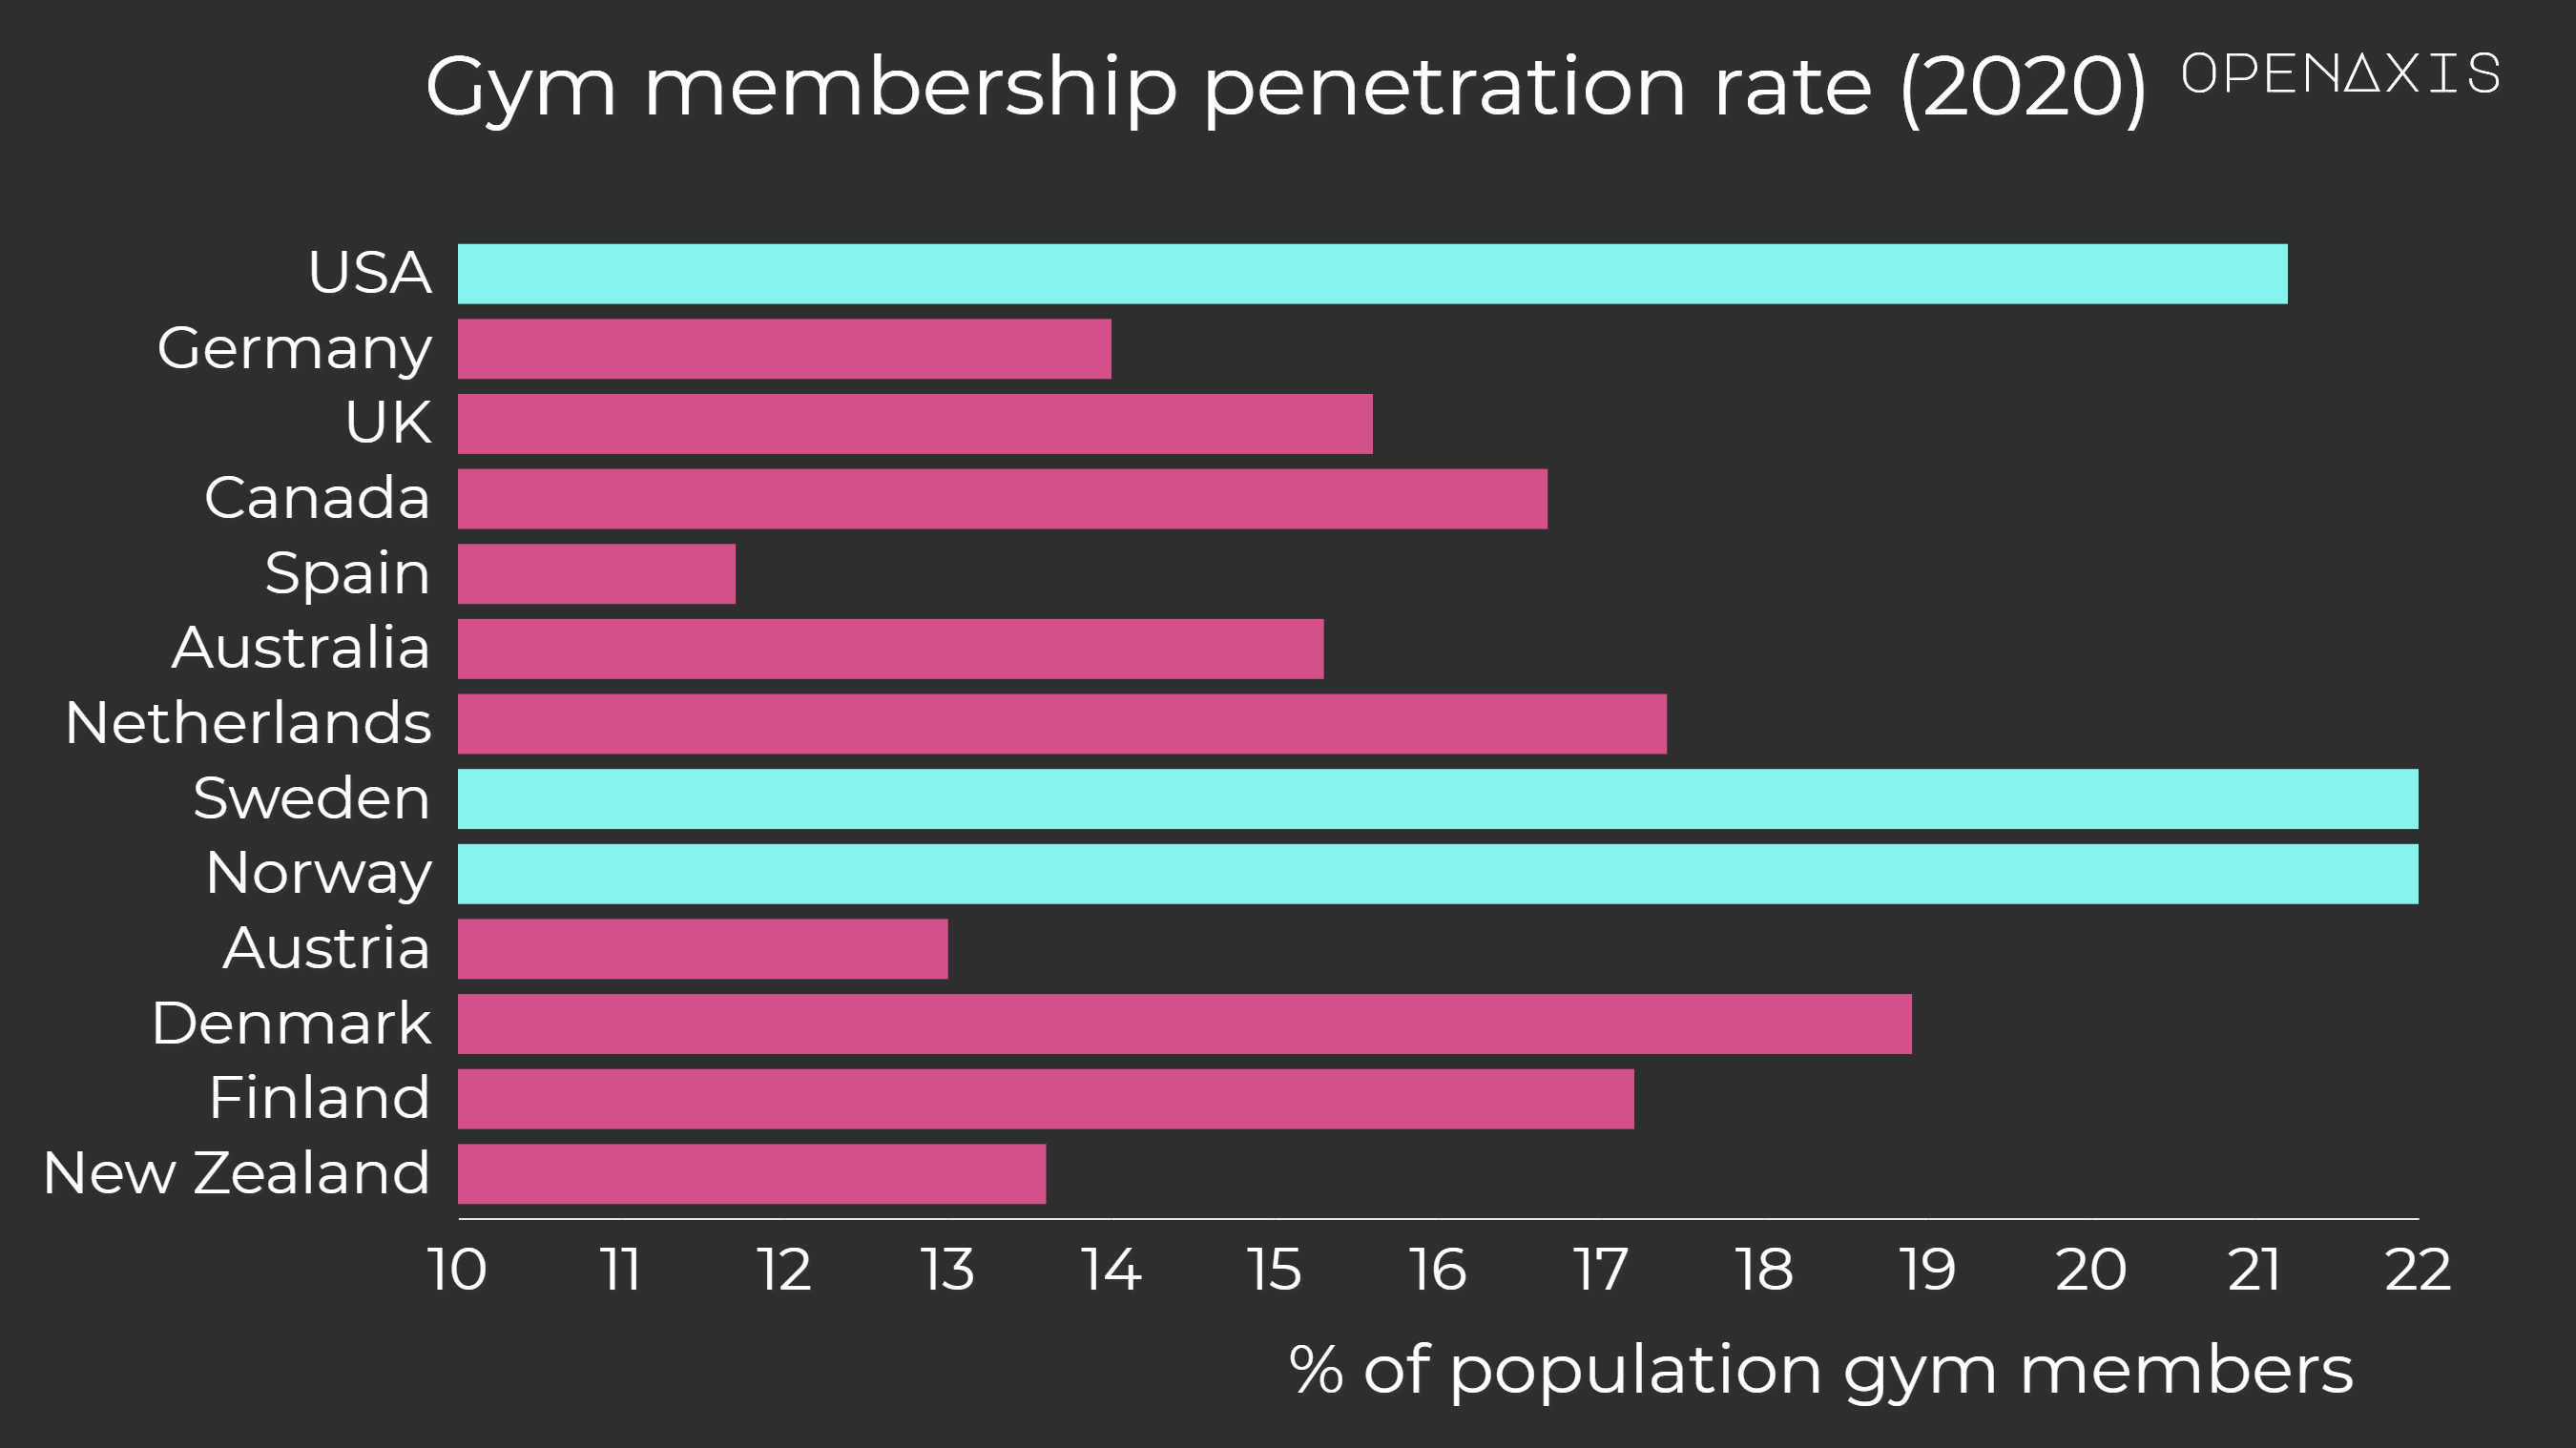 "Gym membership penetration rate (2020)"